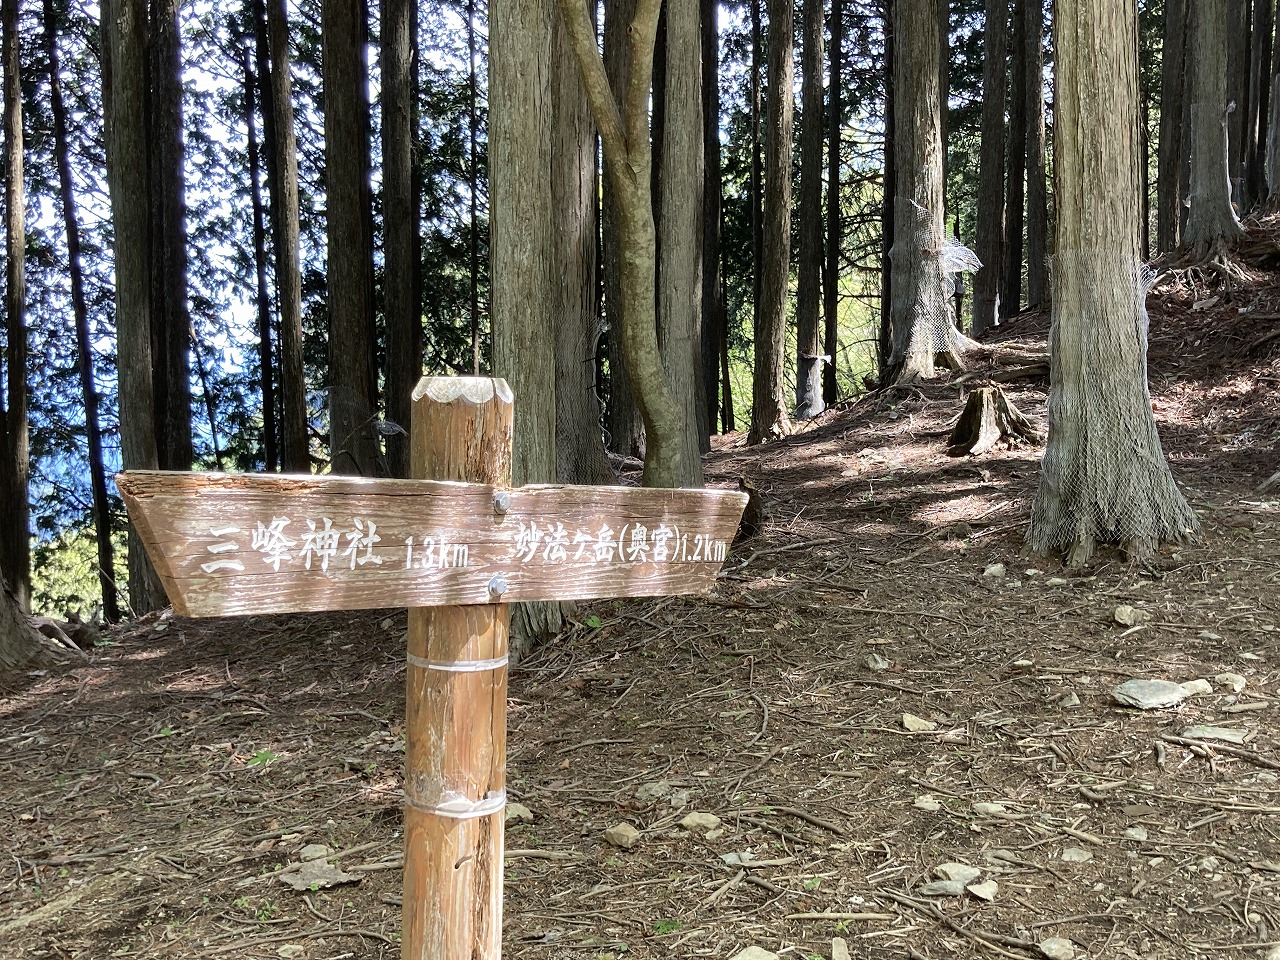 三峯神社の奥宮への登山道（休憩所1のそばにある道案内表示）